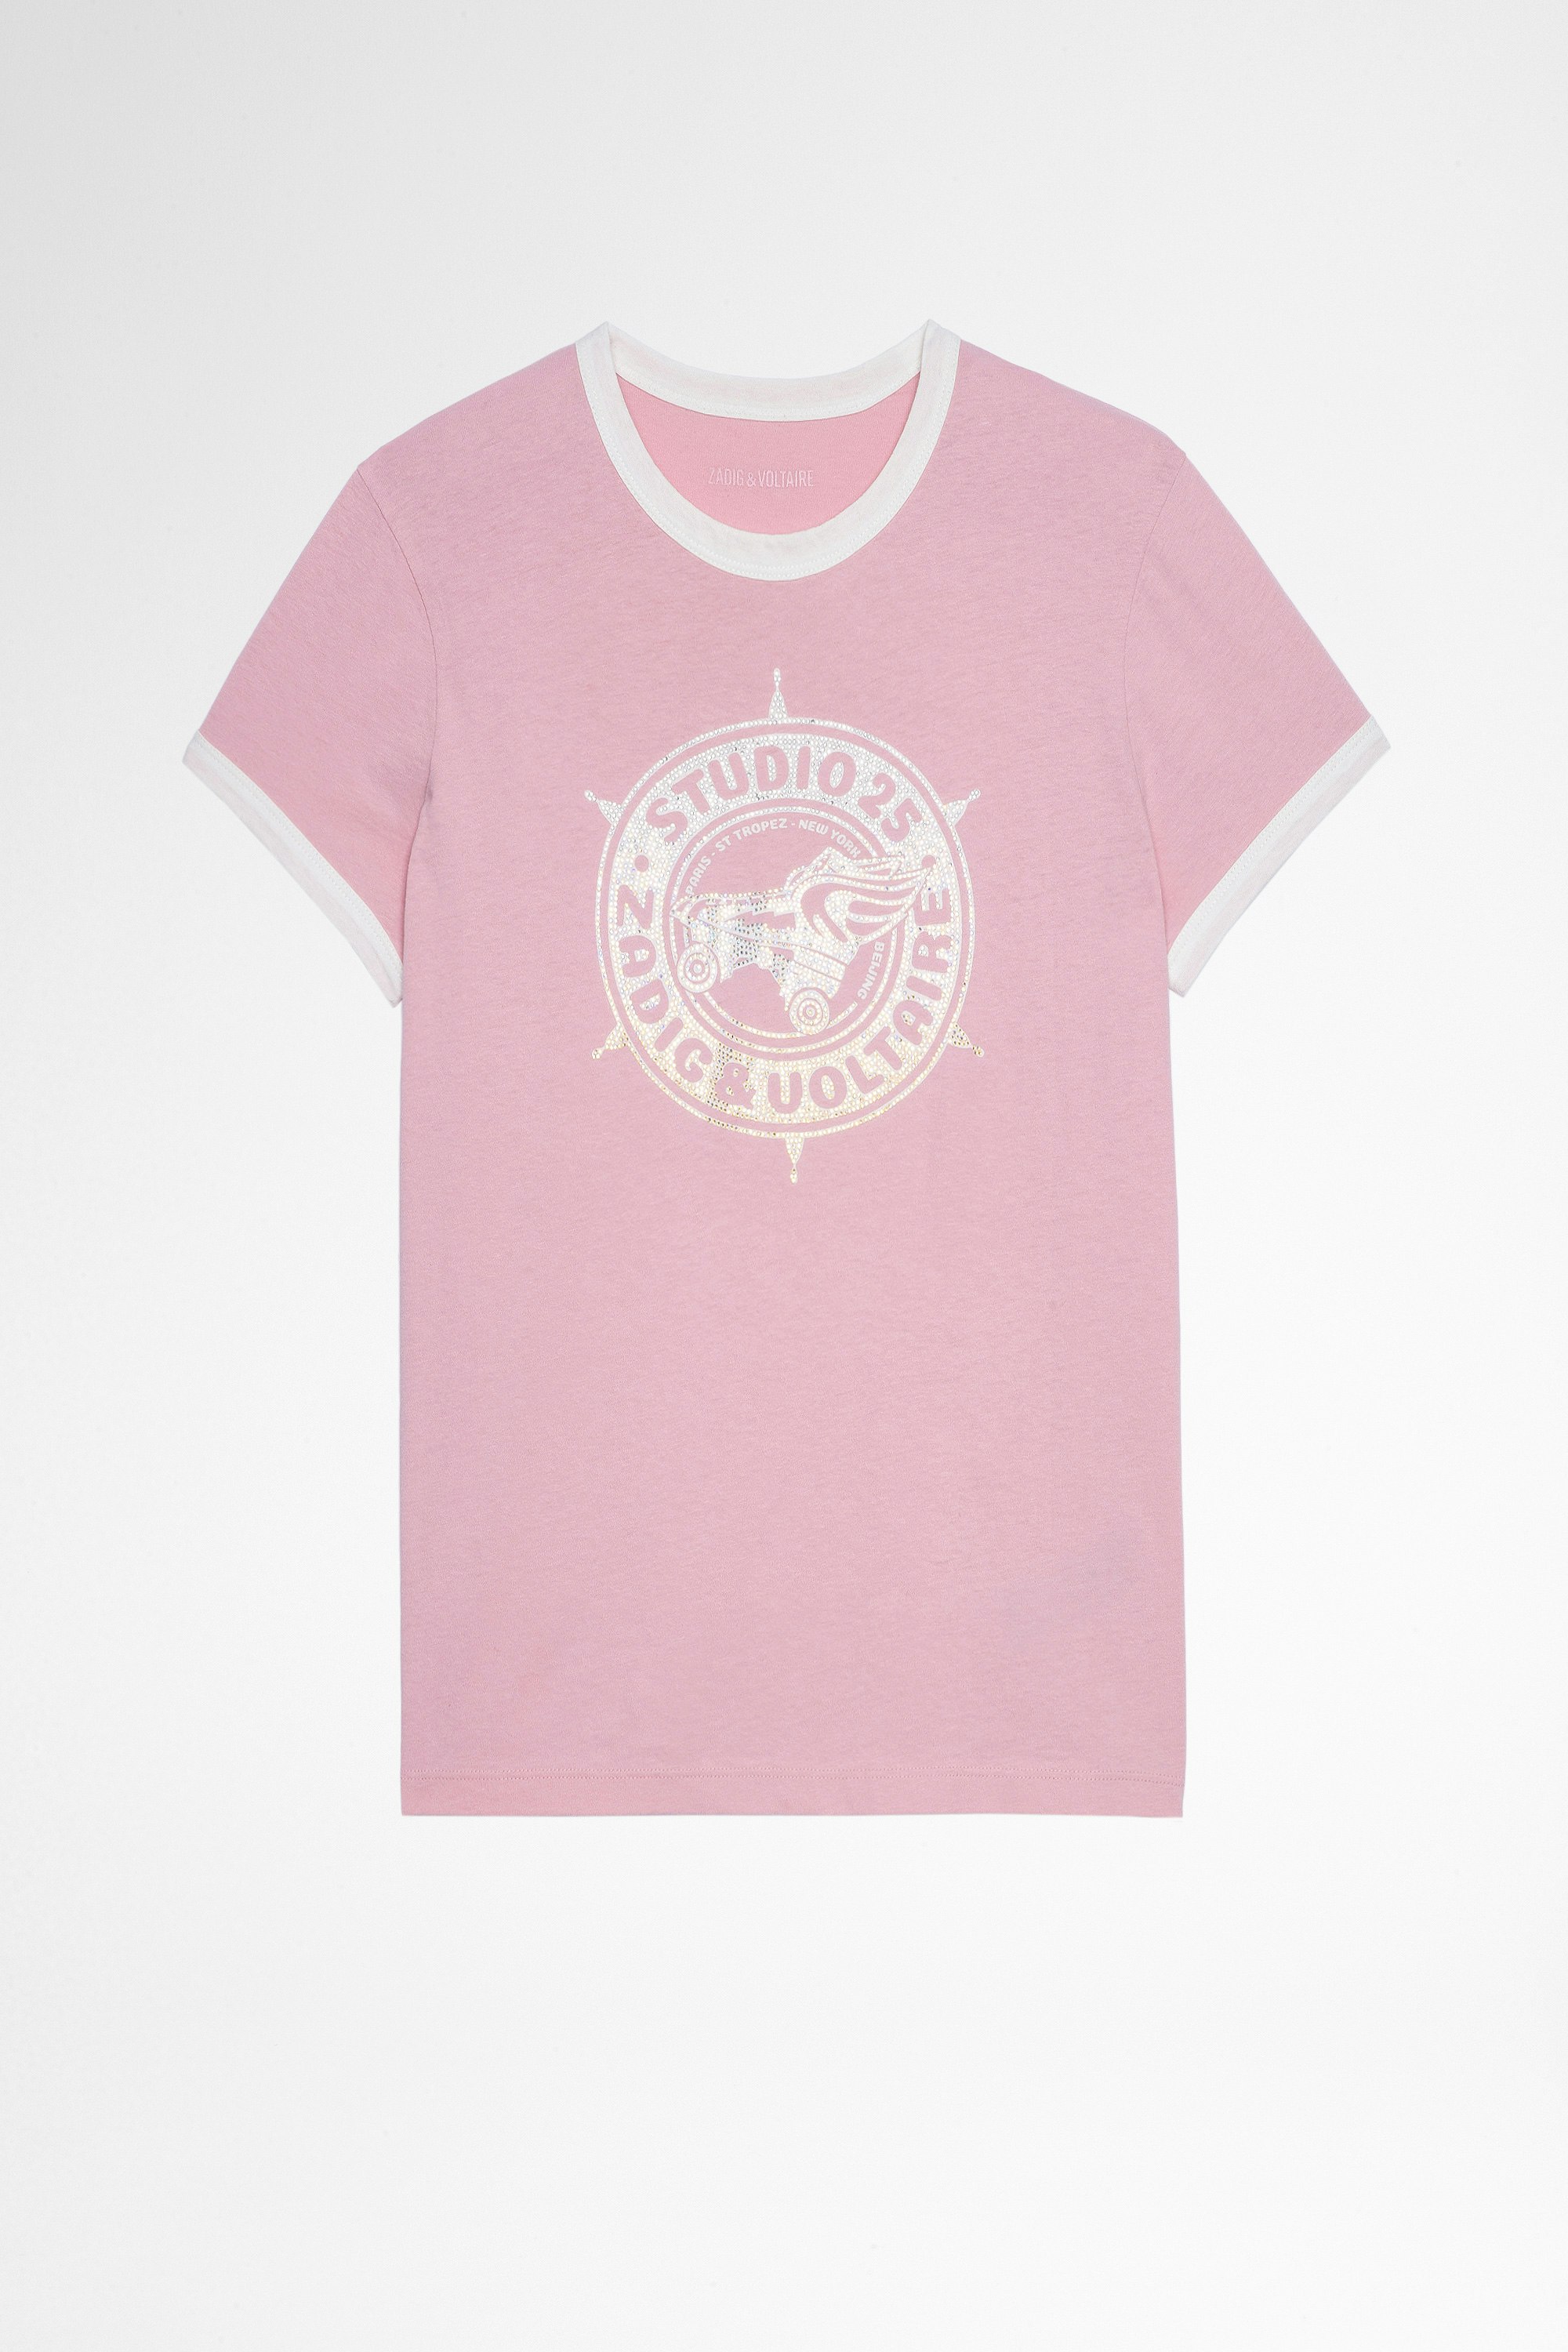 T-shirt Zoe Studio 25 Strass T-shirt in cotone rosa con stampa Studio 25 ricoperta di cristalli donna